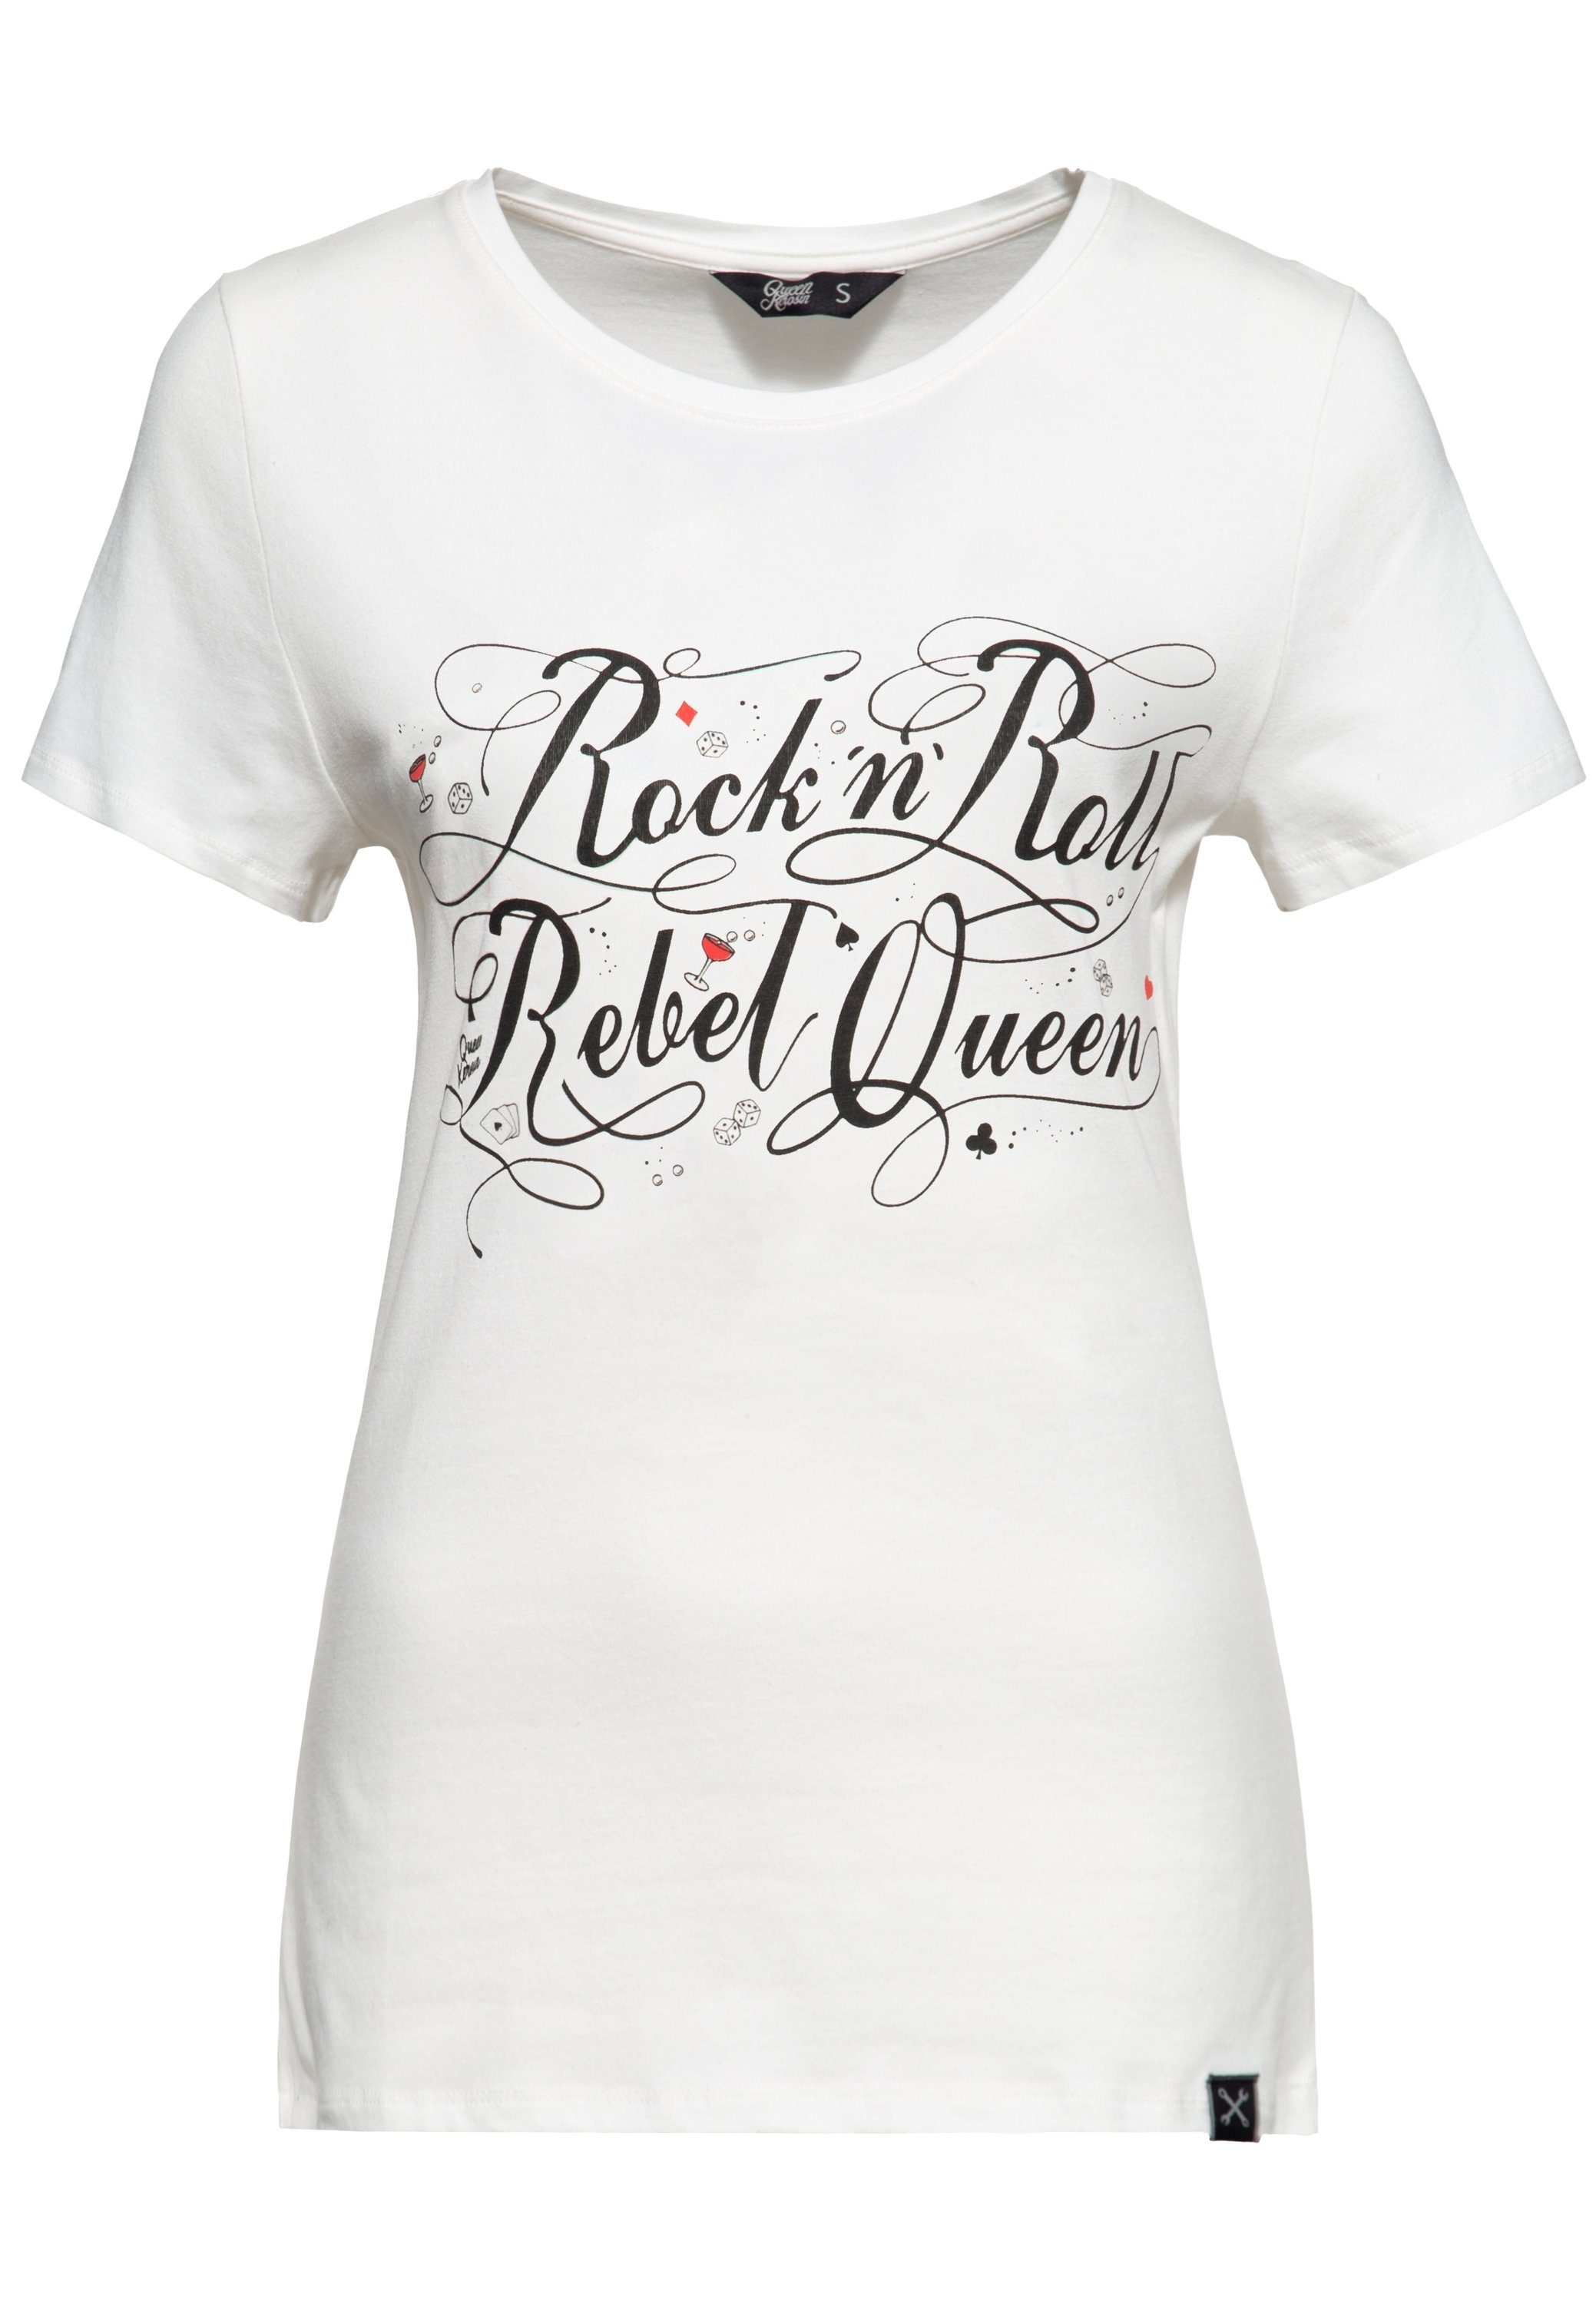 Print-Shirt mit Statement (1-tlg) Print Vintage QueenKerosin Queen Rock'n'Roll Rebel weiß Front